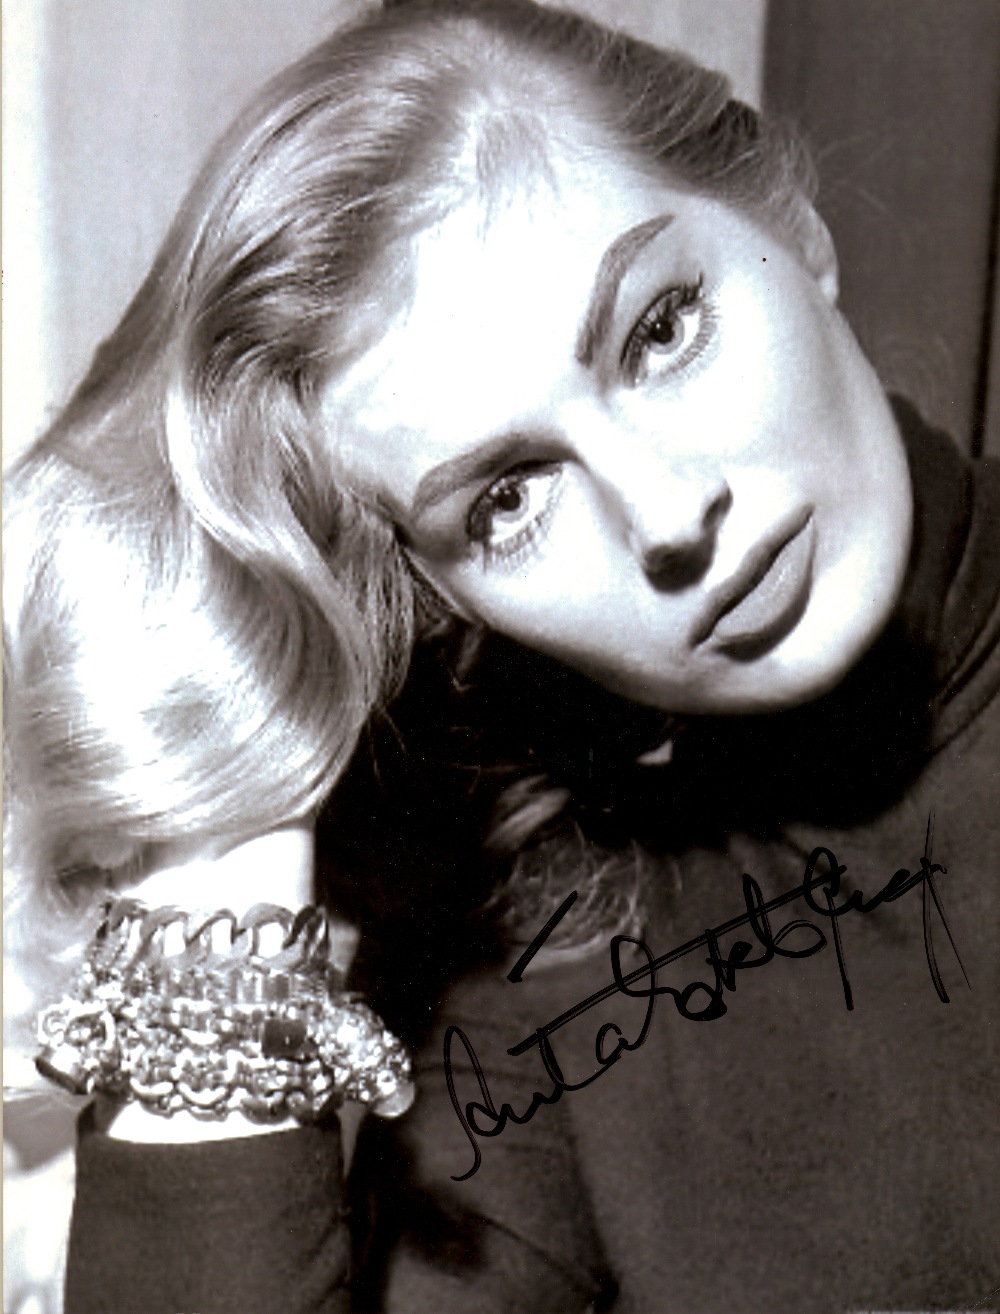 EKBERG ANITA: (1931-   ) Swedish Actress & Sex Symbol. Signed 6 x 8 photograph, a close-up